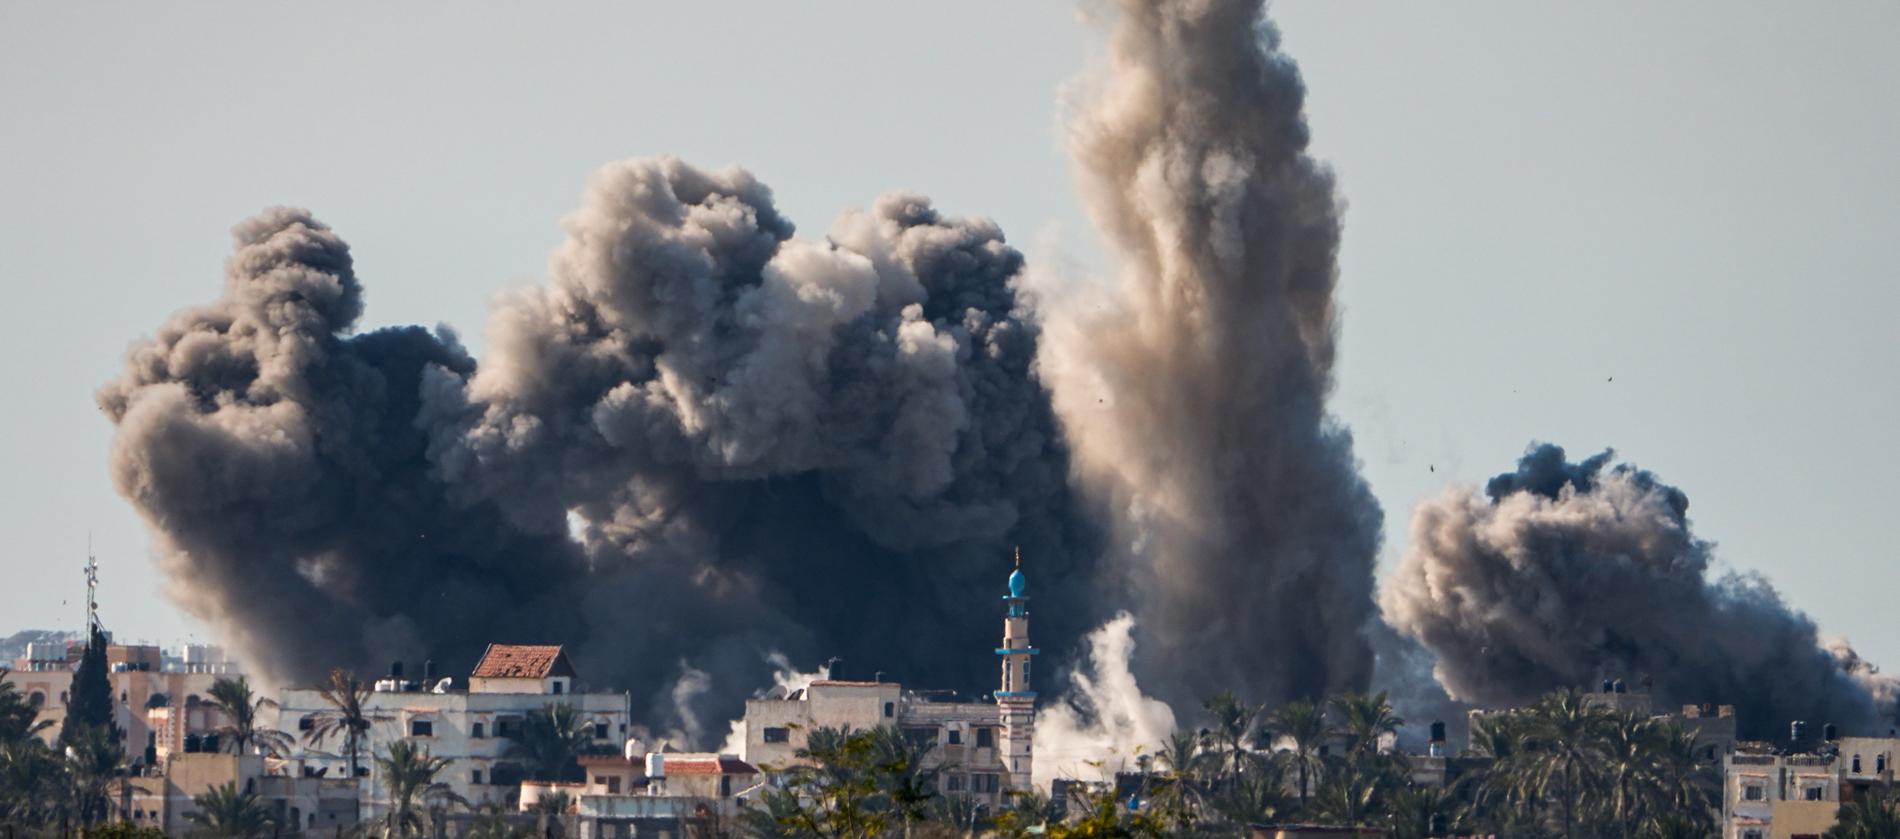 Det israeliska bombardemanget av Gaza har varit intensivt sedan kriget bröt ut efter Hamas attack i oktober.